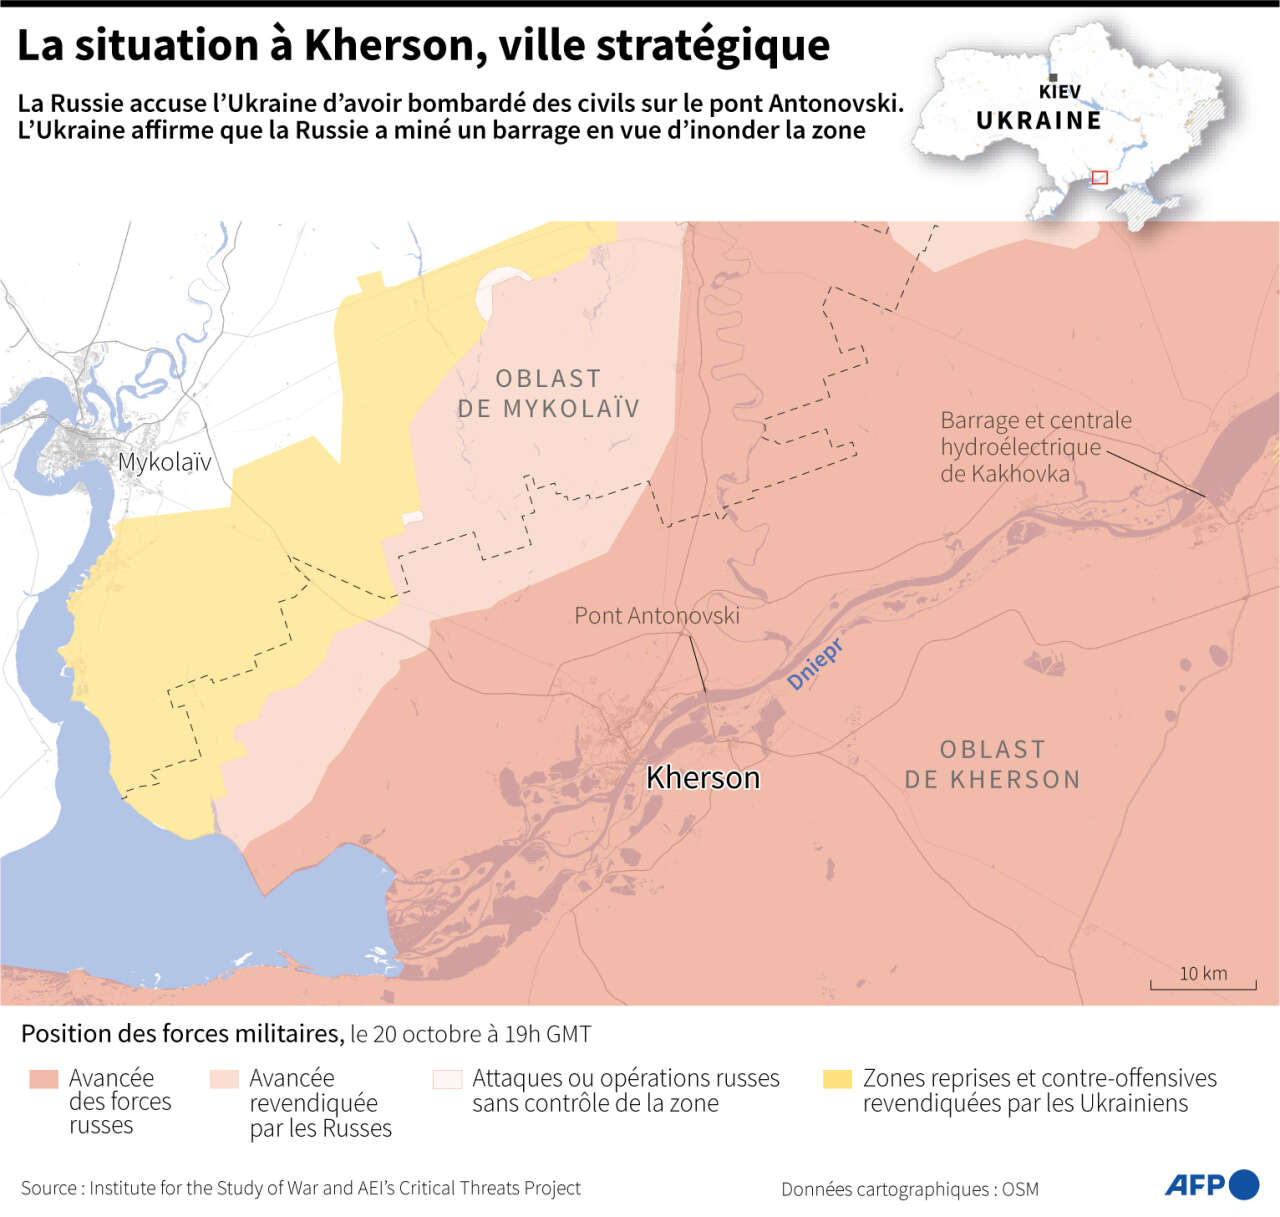 Guerre en Ukraine : le barrage de Kakhovka, l’autre menace russe sur Kherson ! (vidéo sur bidfoly.com) Par Claire Tervé Dea53ba_1666360174365-001-32lu4x2-jpeg